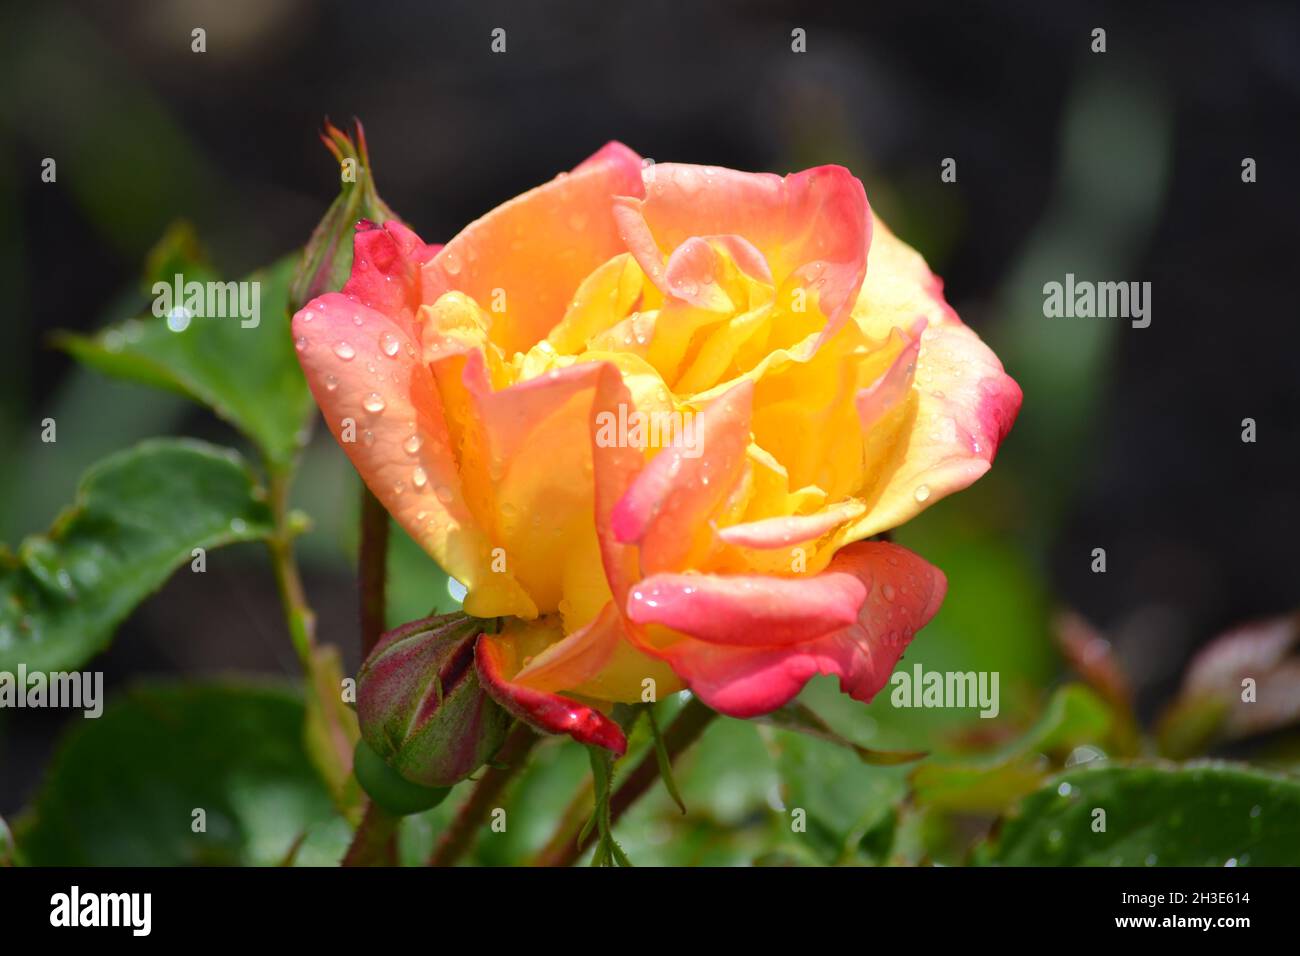 Rosa gialla e rossa - Rosaceae - Rosa - petali di rosa - sole che sgranata su una rosa del giardino - fiore perenne - Filey - UK Foto Stock